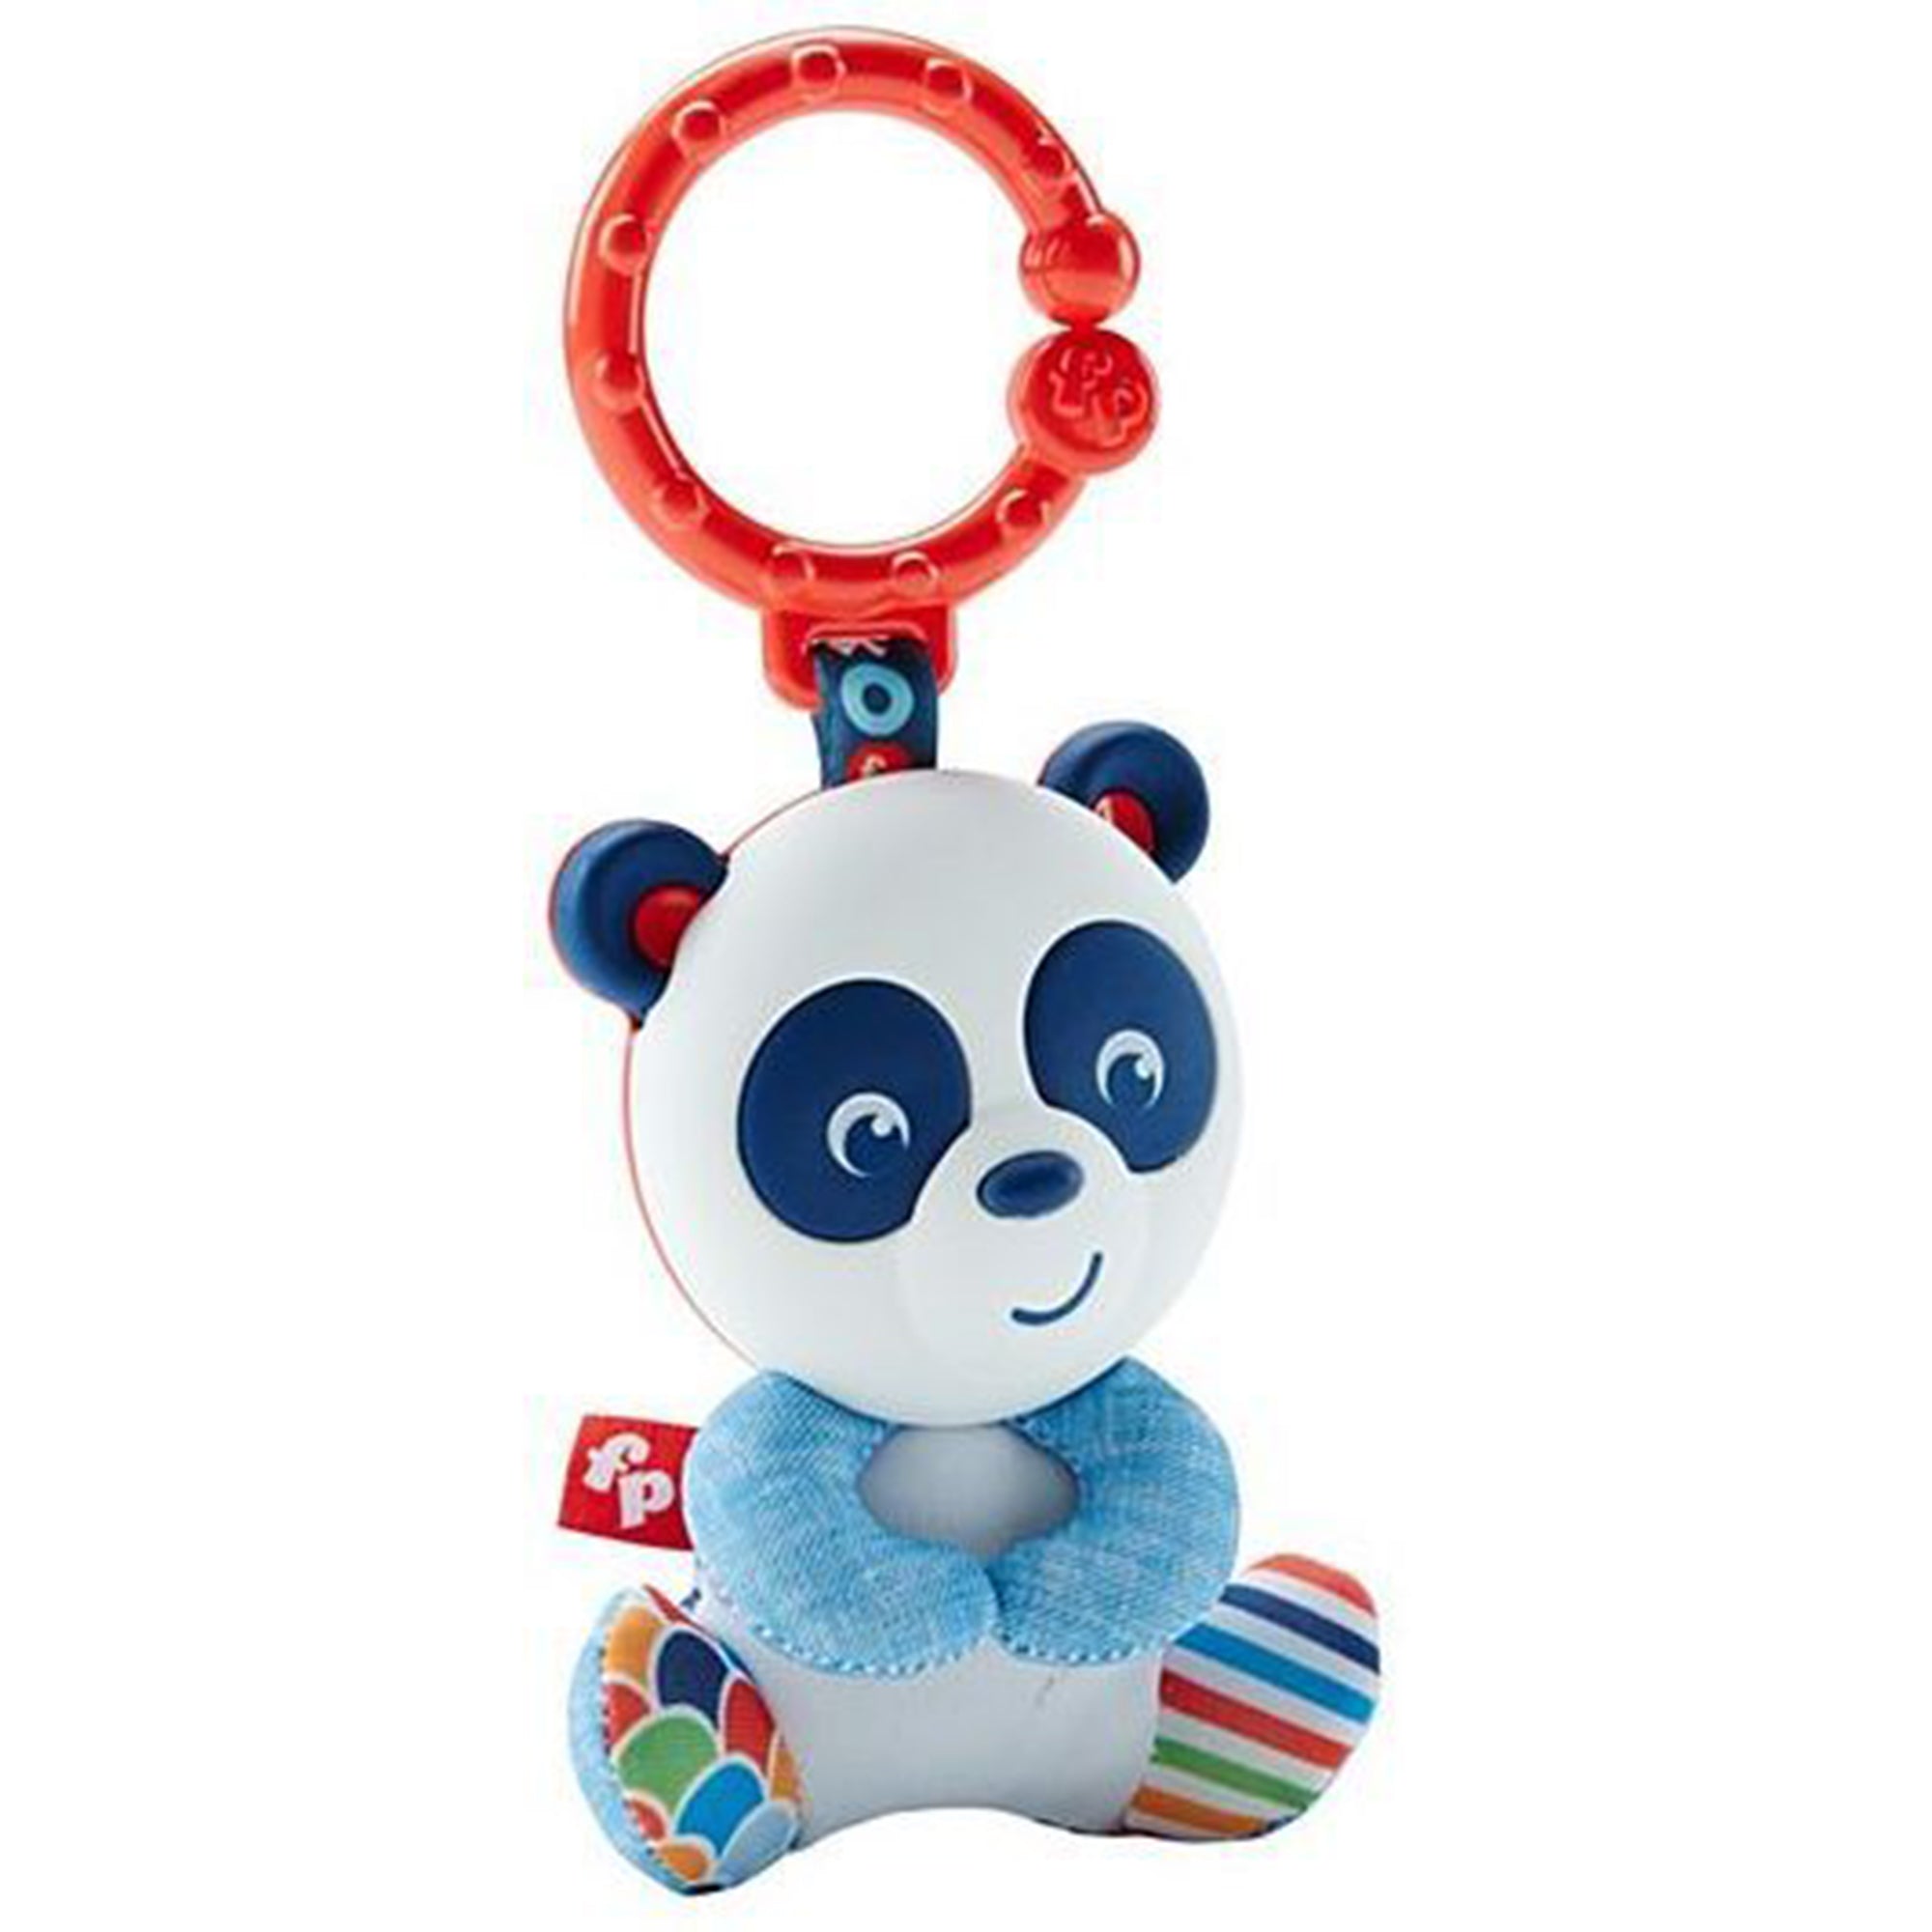 Giocattolo Fisher-Price per bambini sonaglietto specchietto del panda 2735